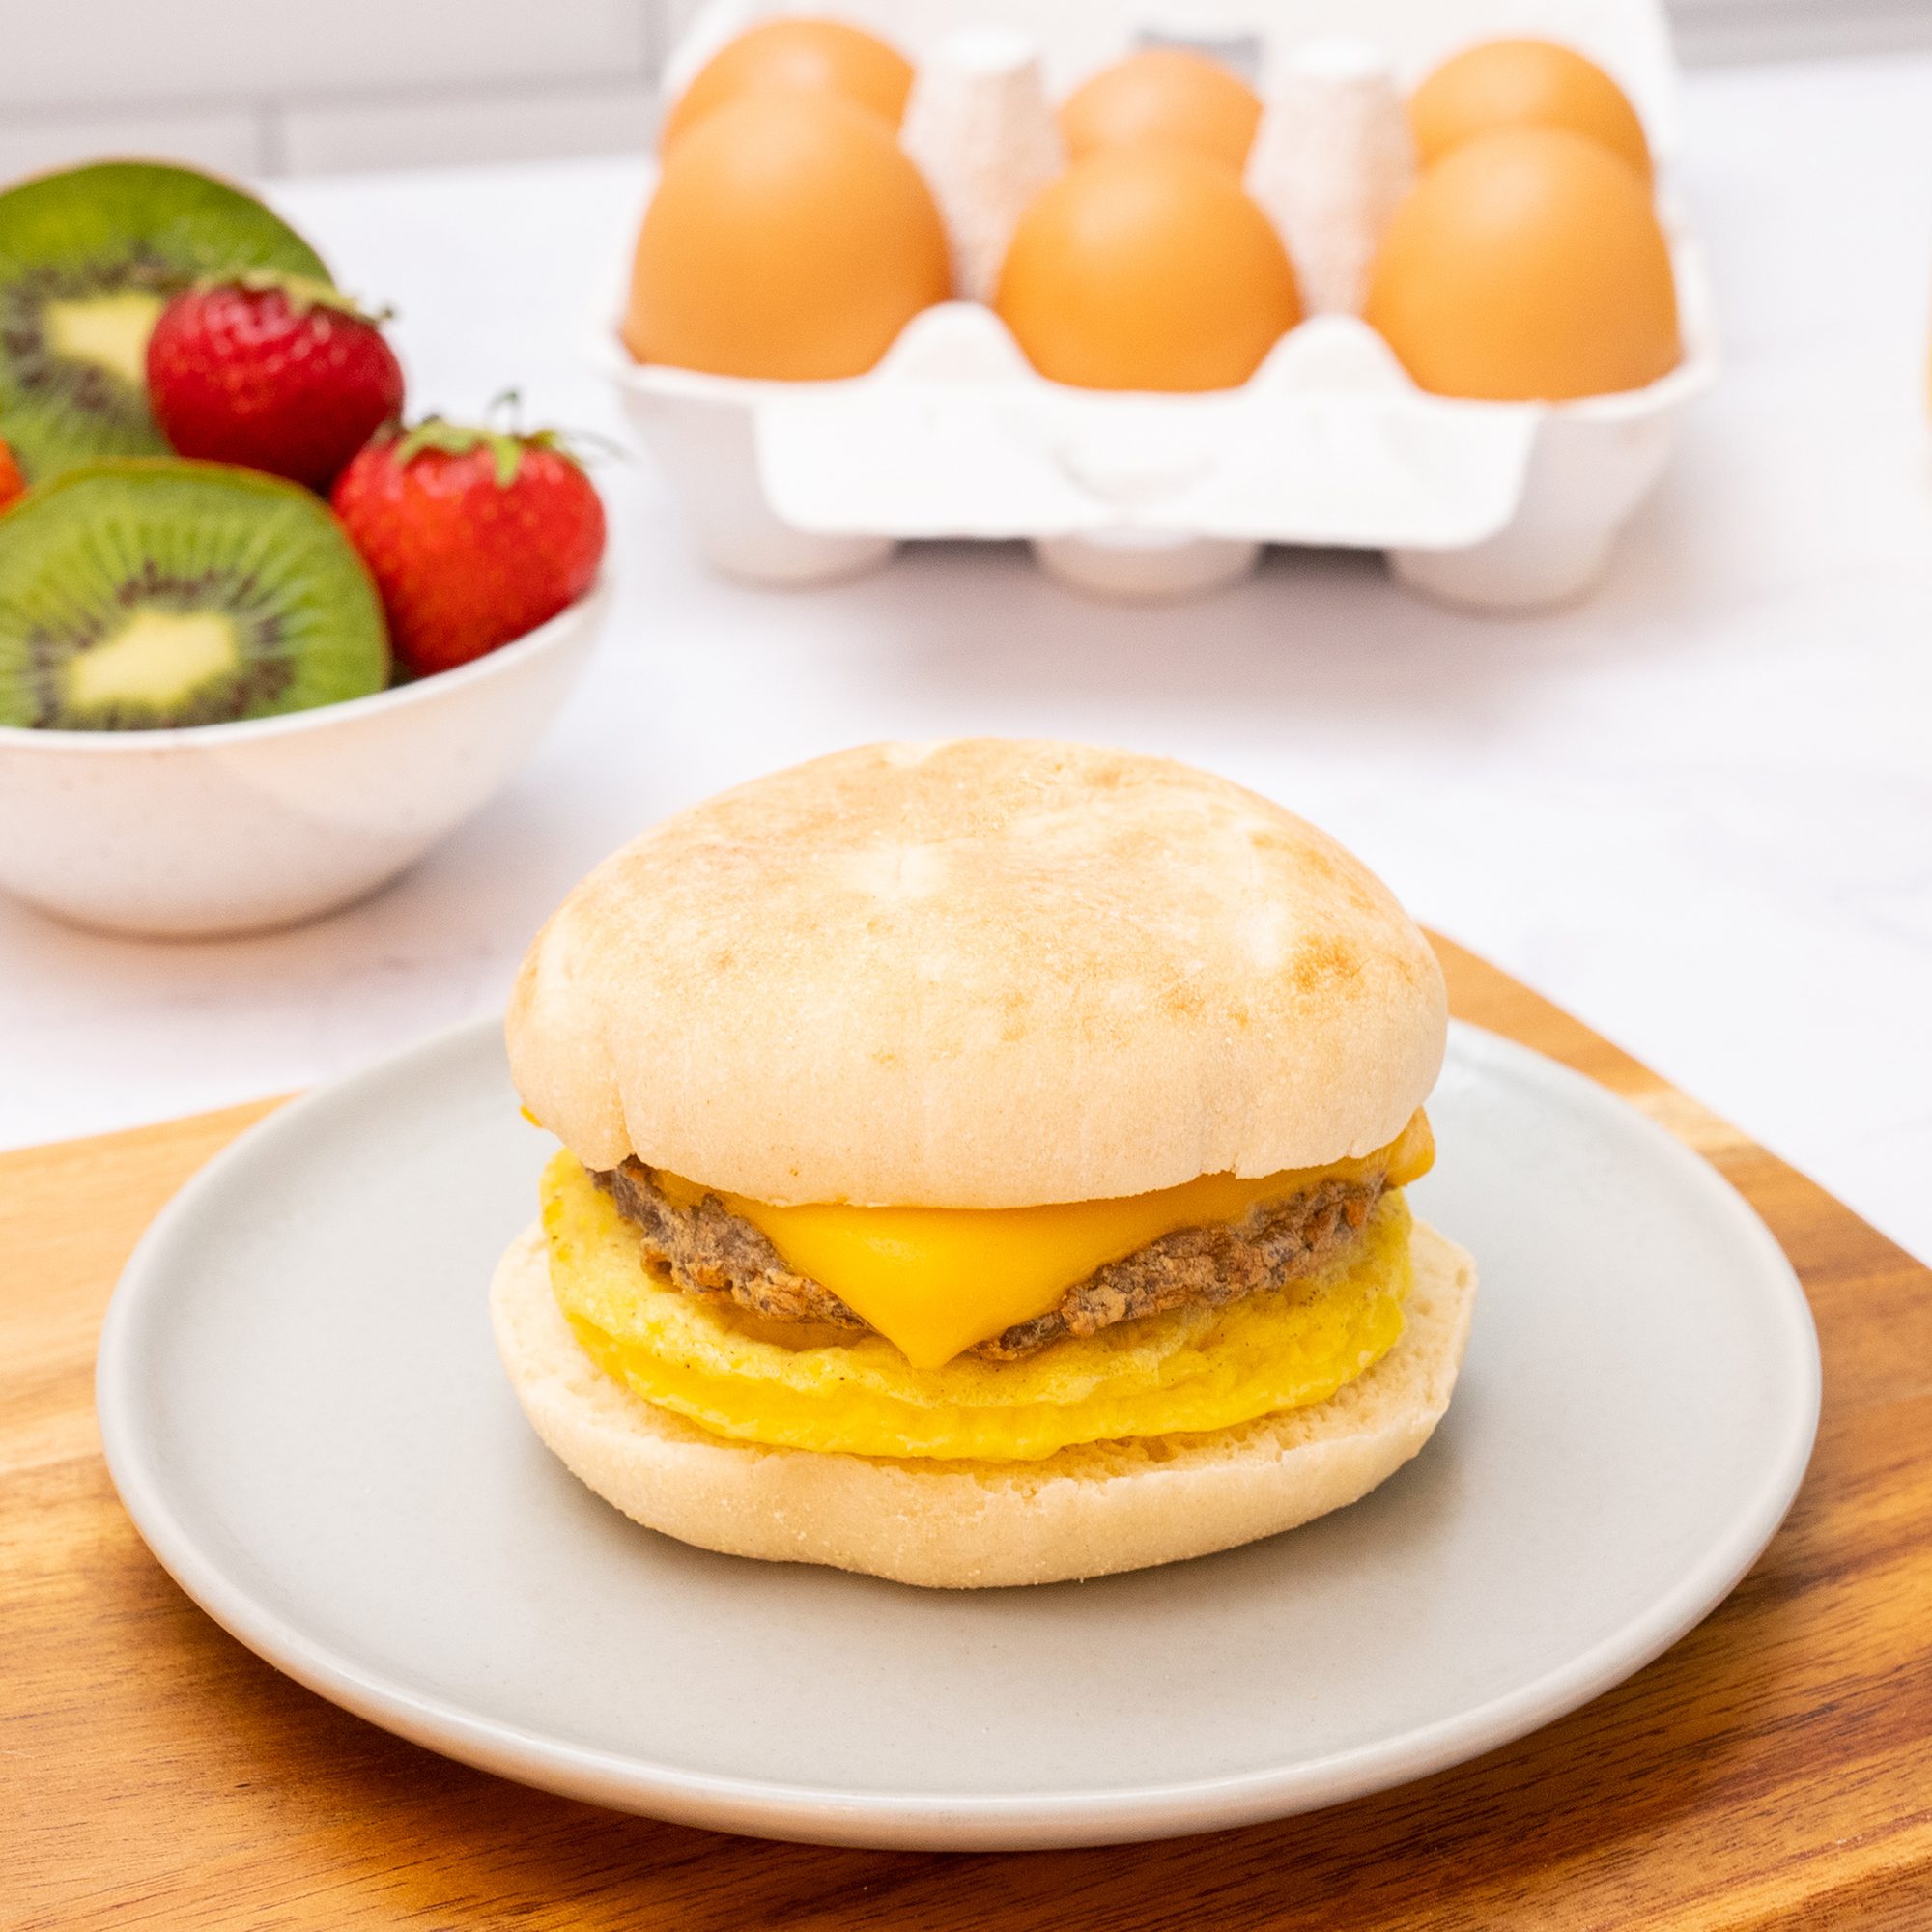 Red's Gluten-Free Turkey Sausage Egg'wich Breakfast Sandwich, Frozen, 3.9  oz, 4 Ct Box